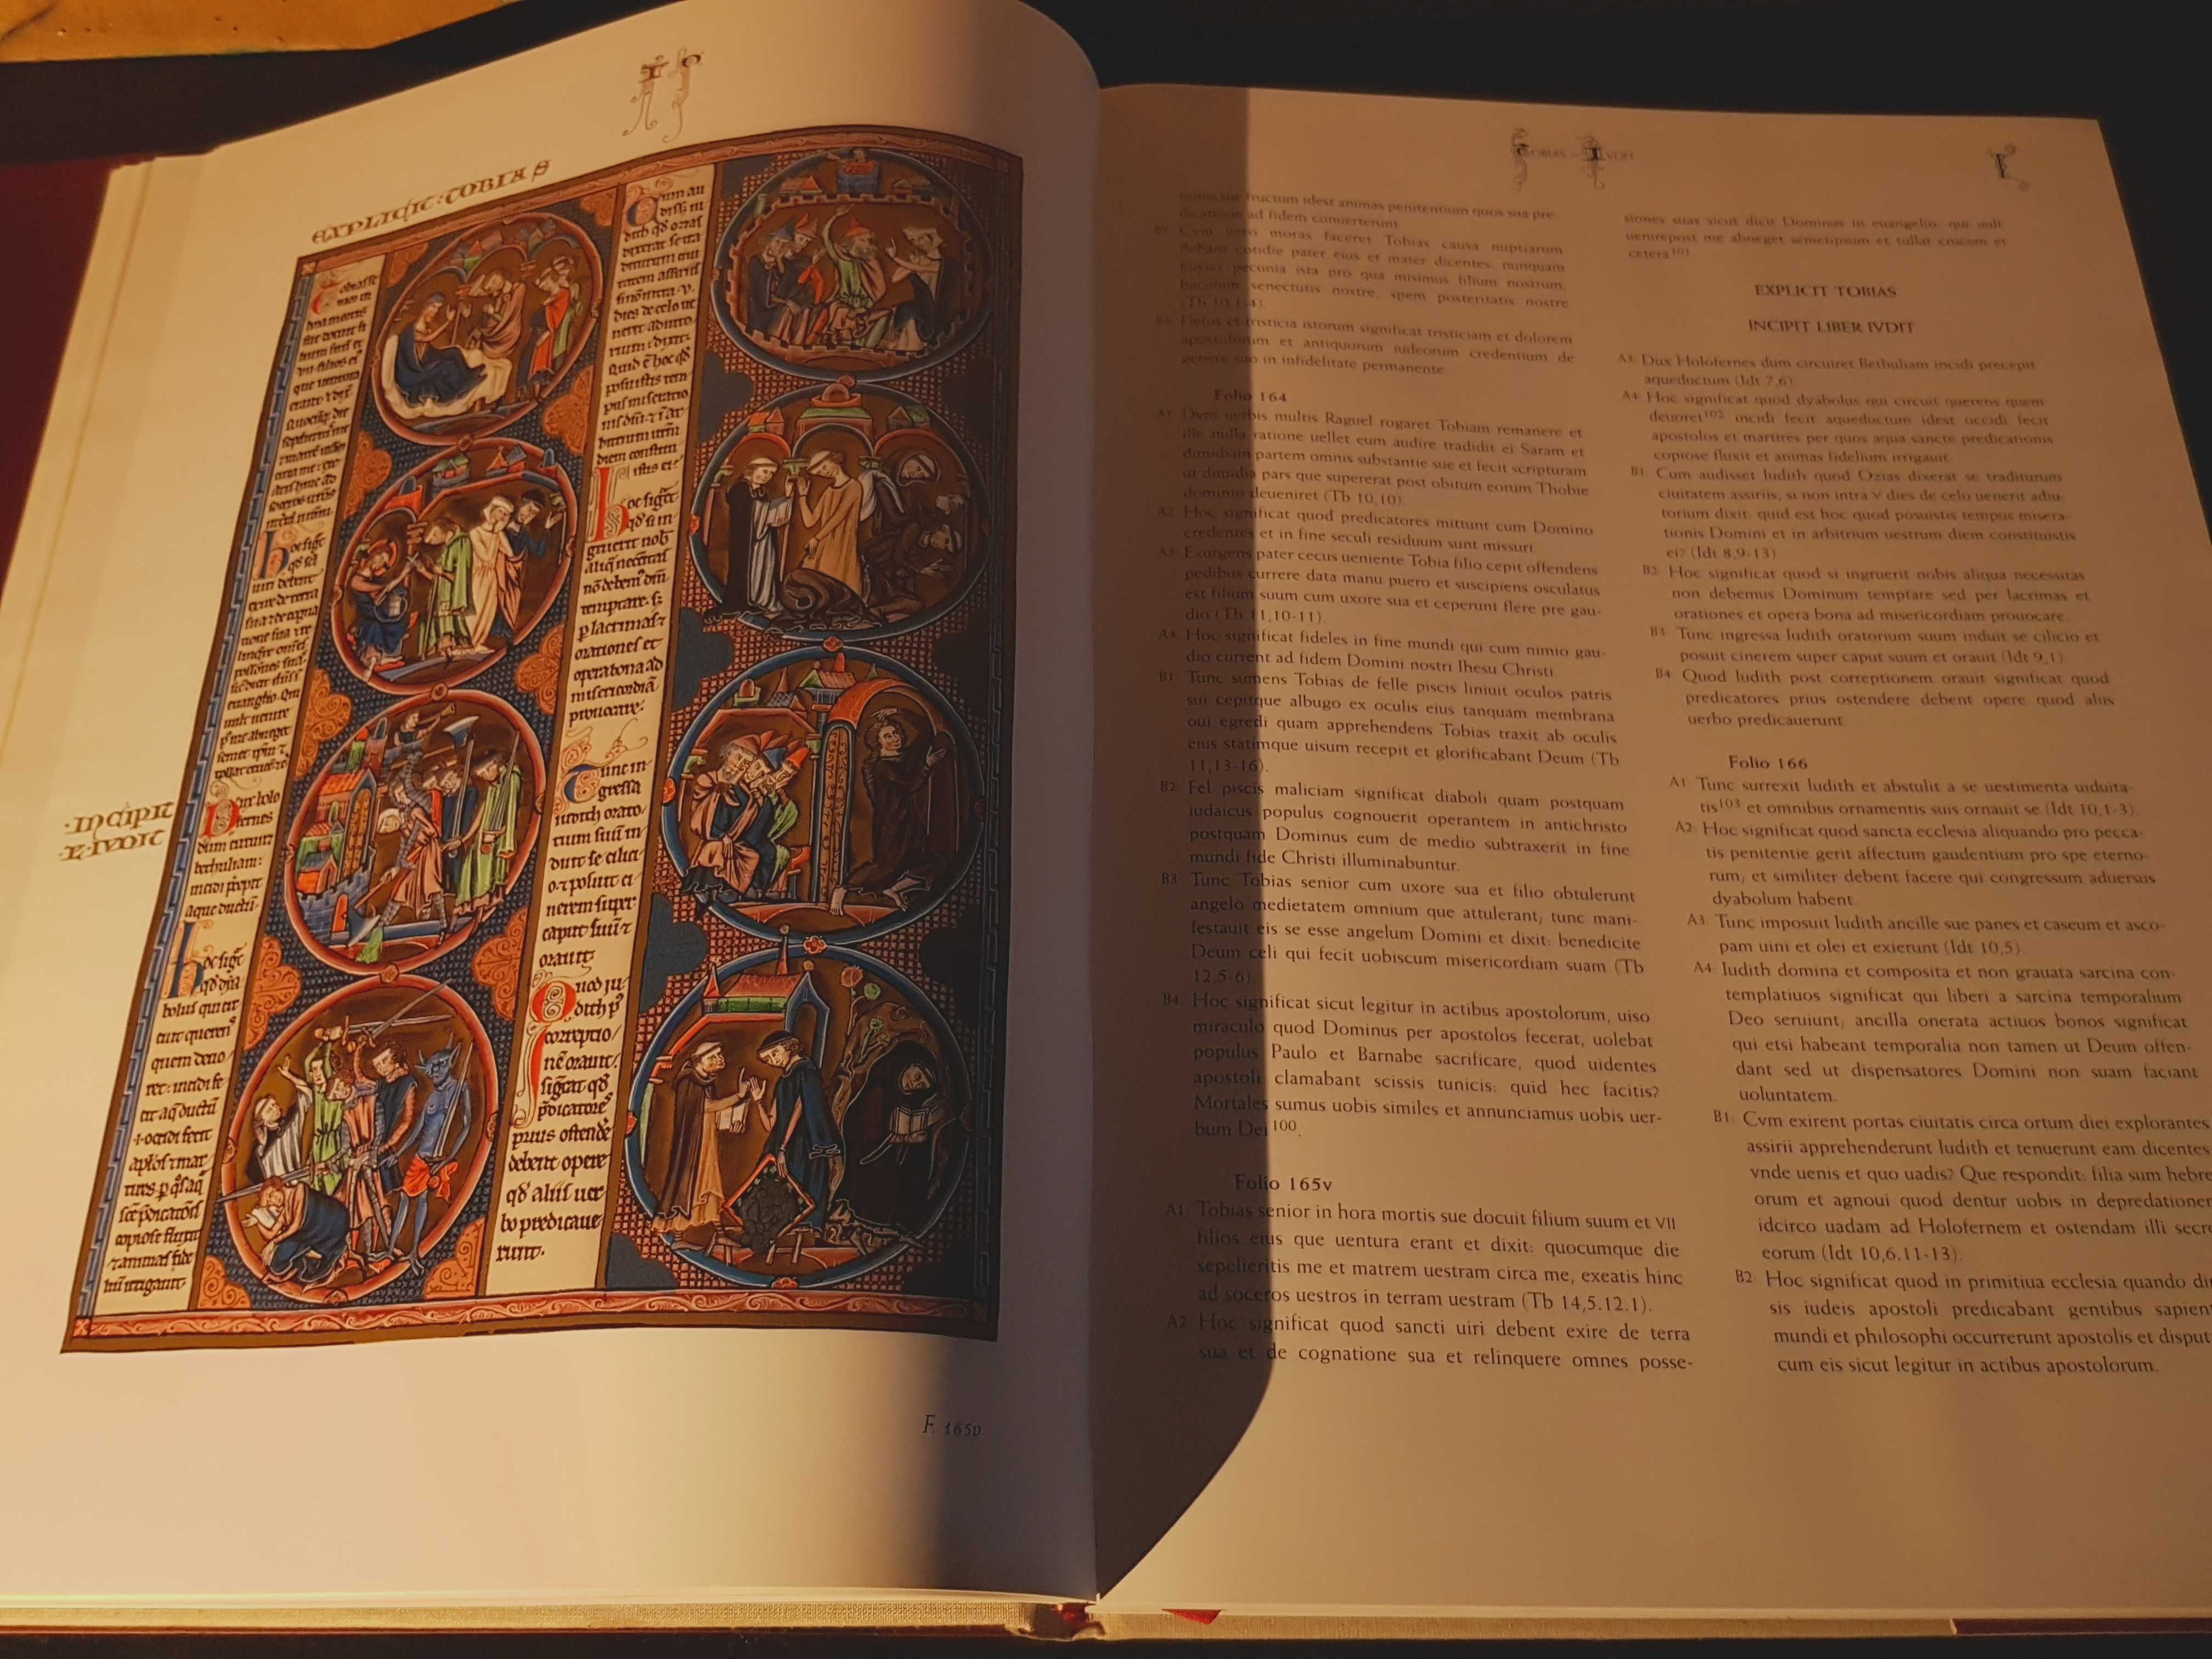 Bíblia de São Luís - Livro de Estudo